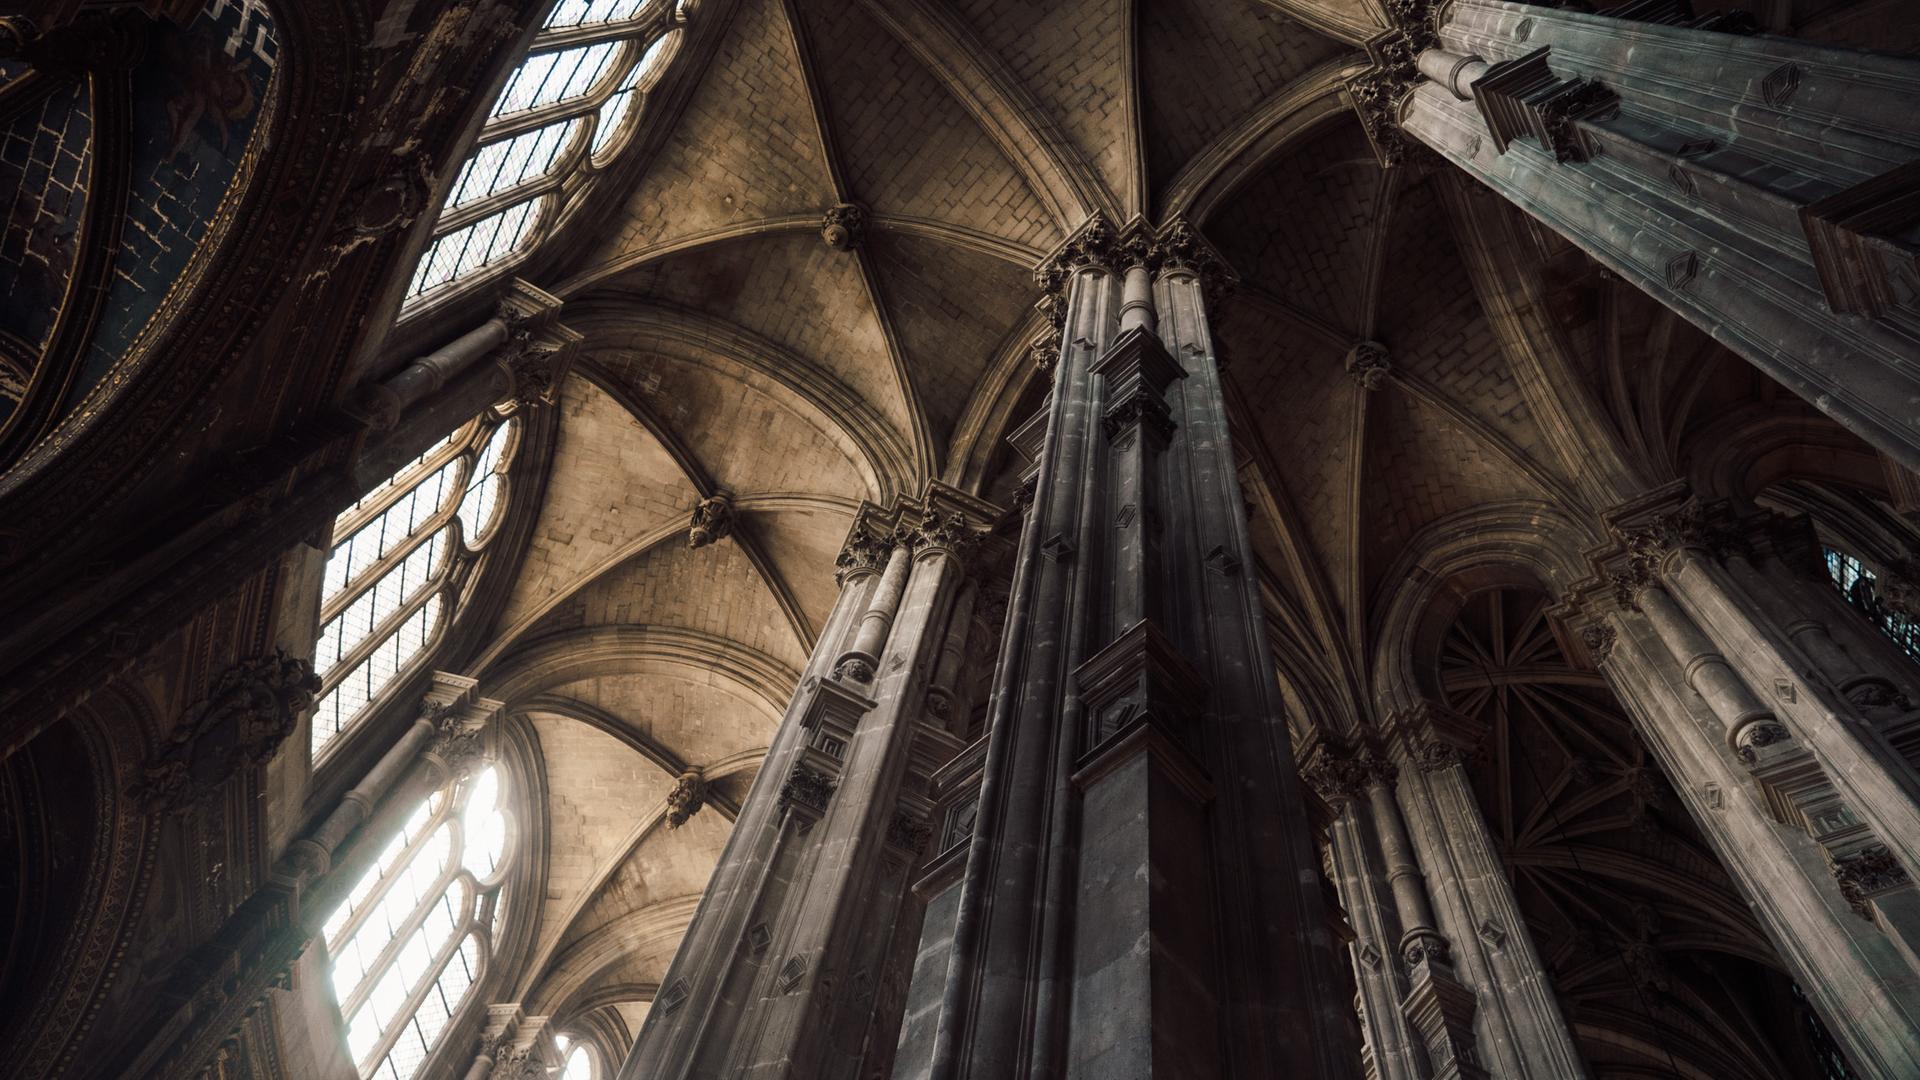 Aufnahme des hohen Daches einer gotischen Kathedrale aus der Froschperspektive.